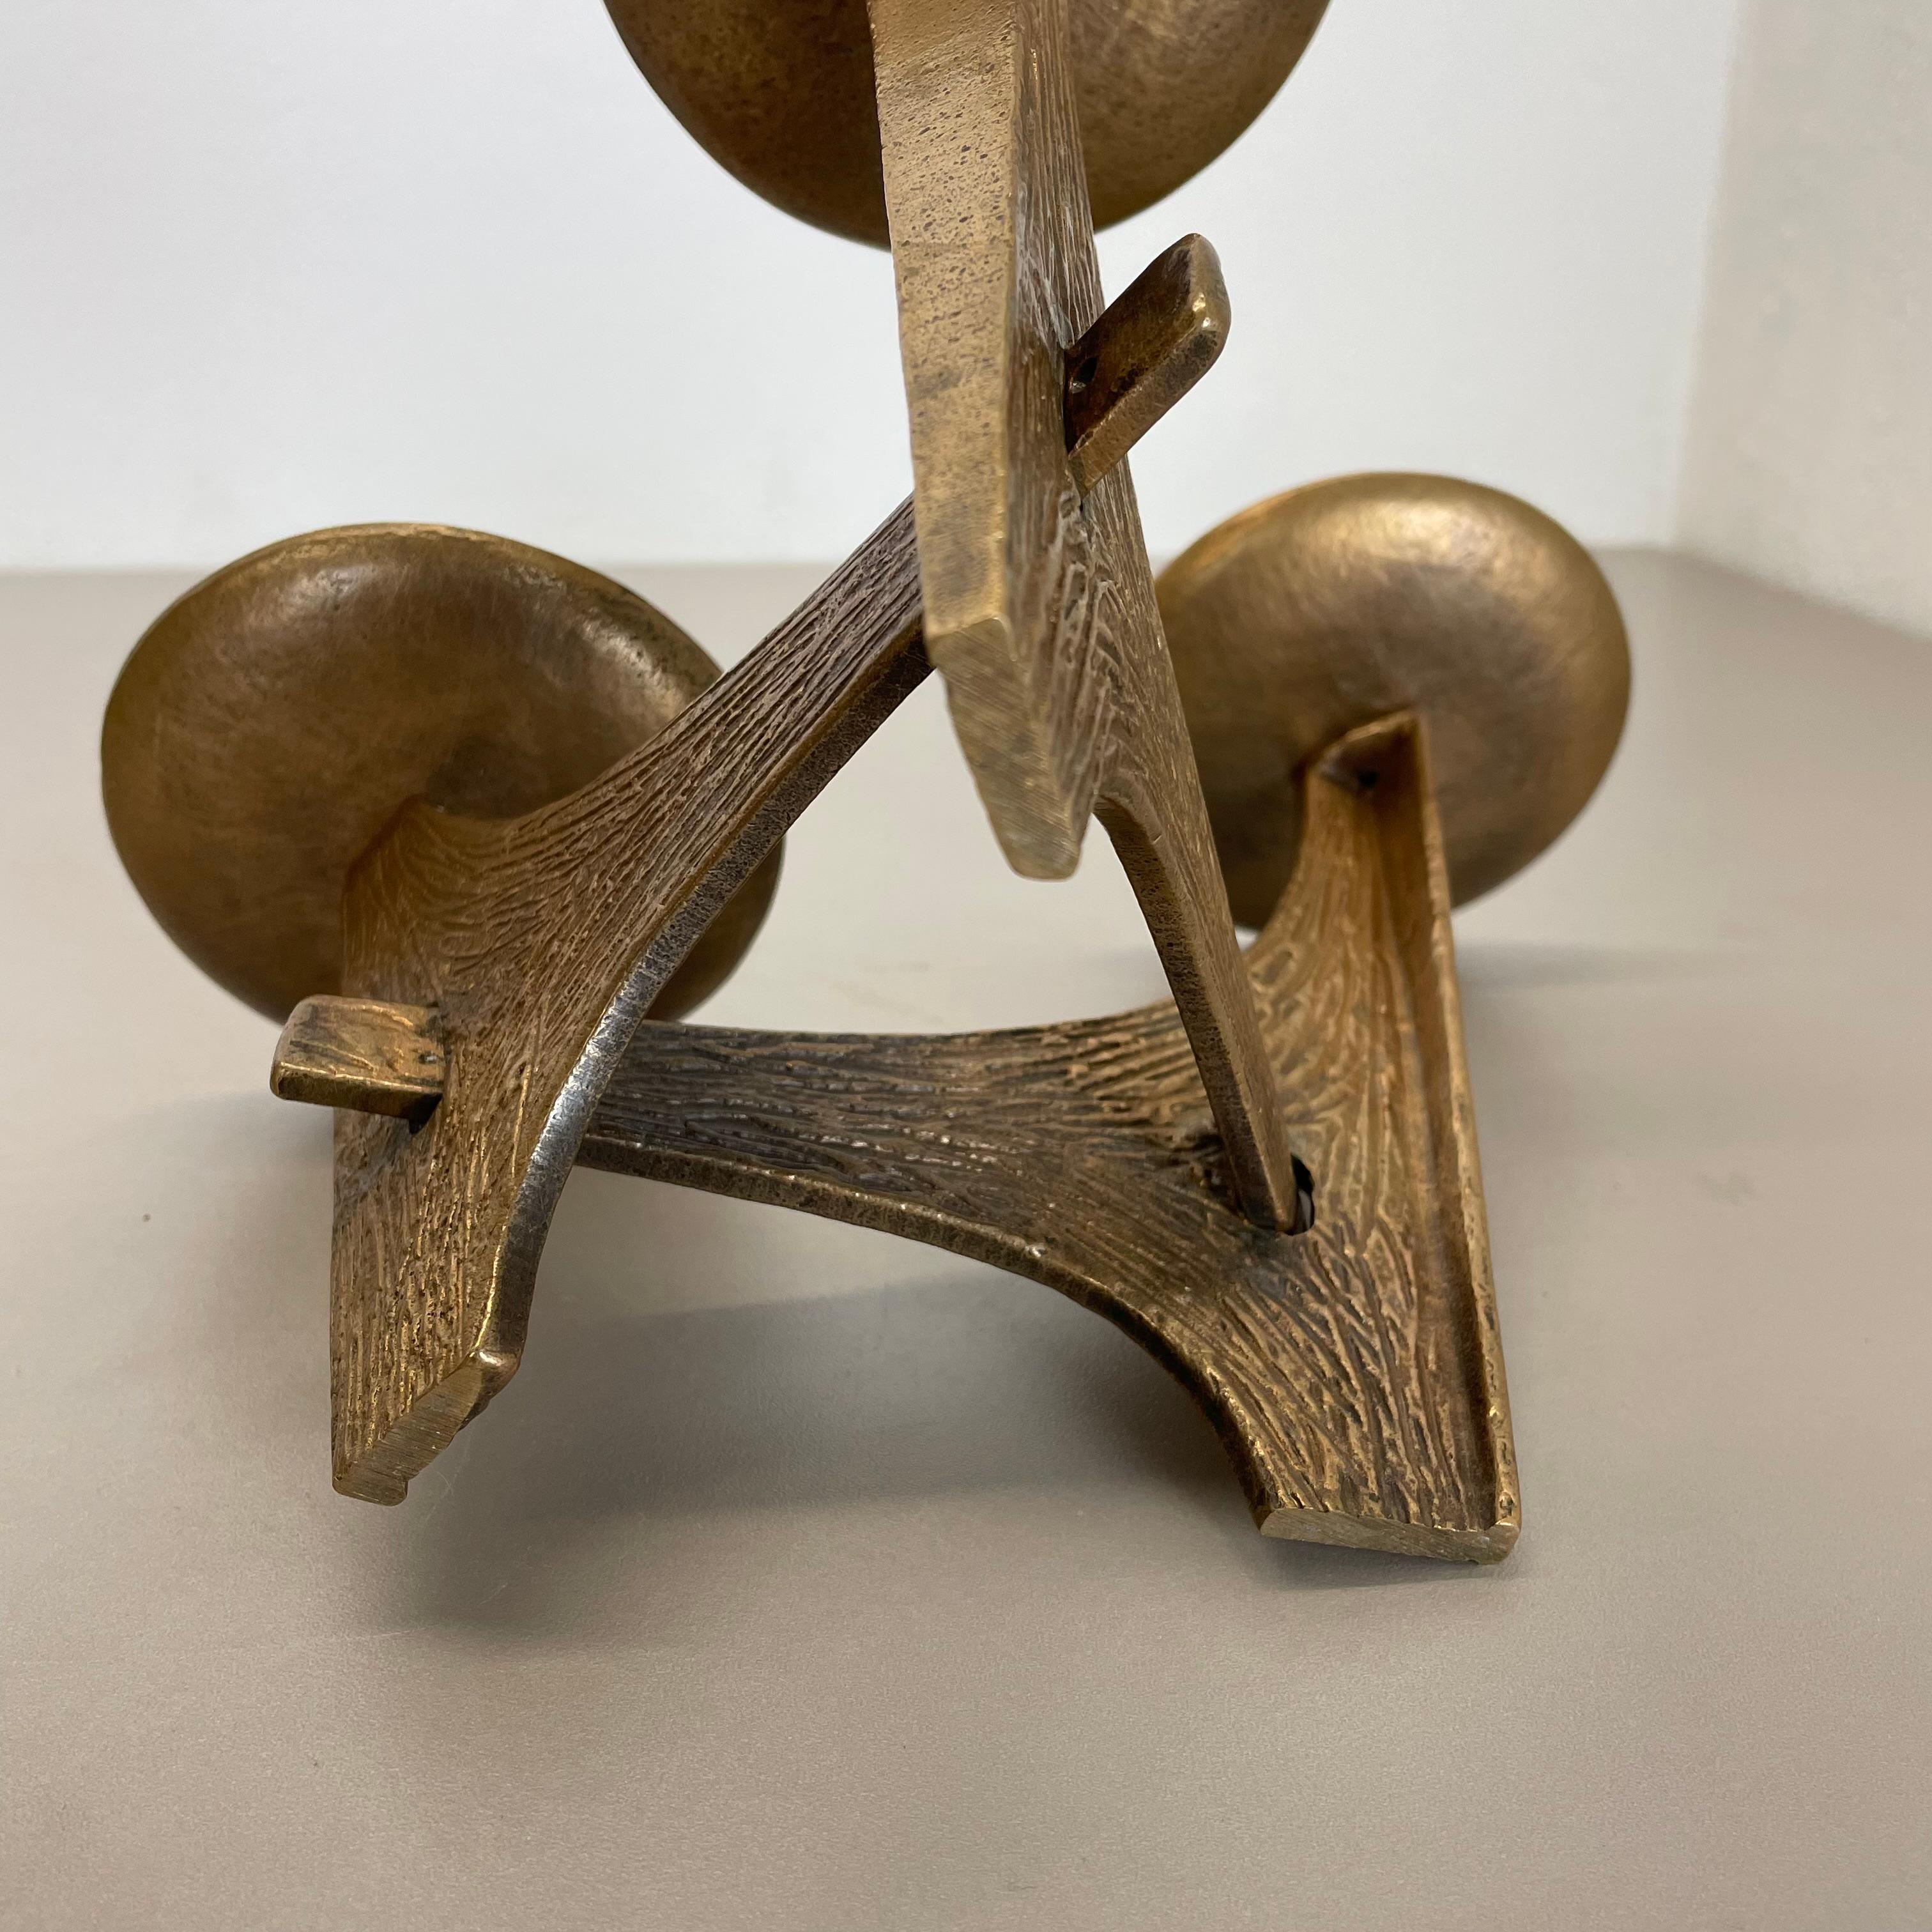 Modernist 1.8kg Sculptural Brutalist Bronze Metal Candleholder, France, 1960s For Sale 11